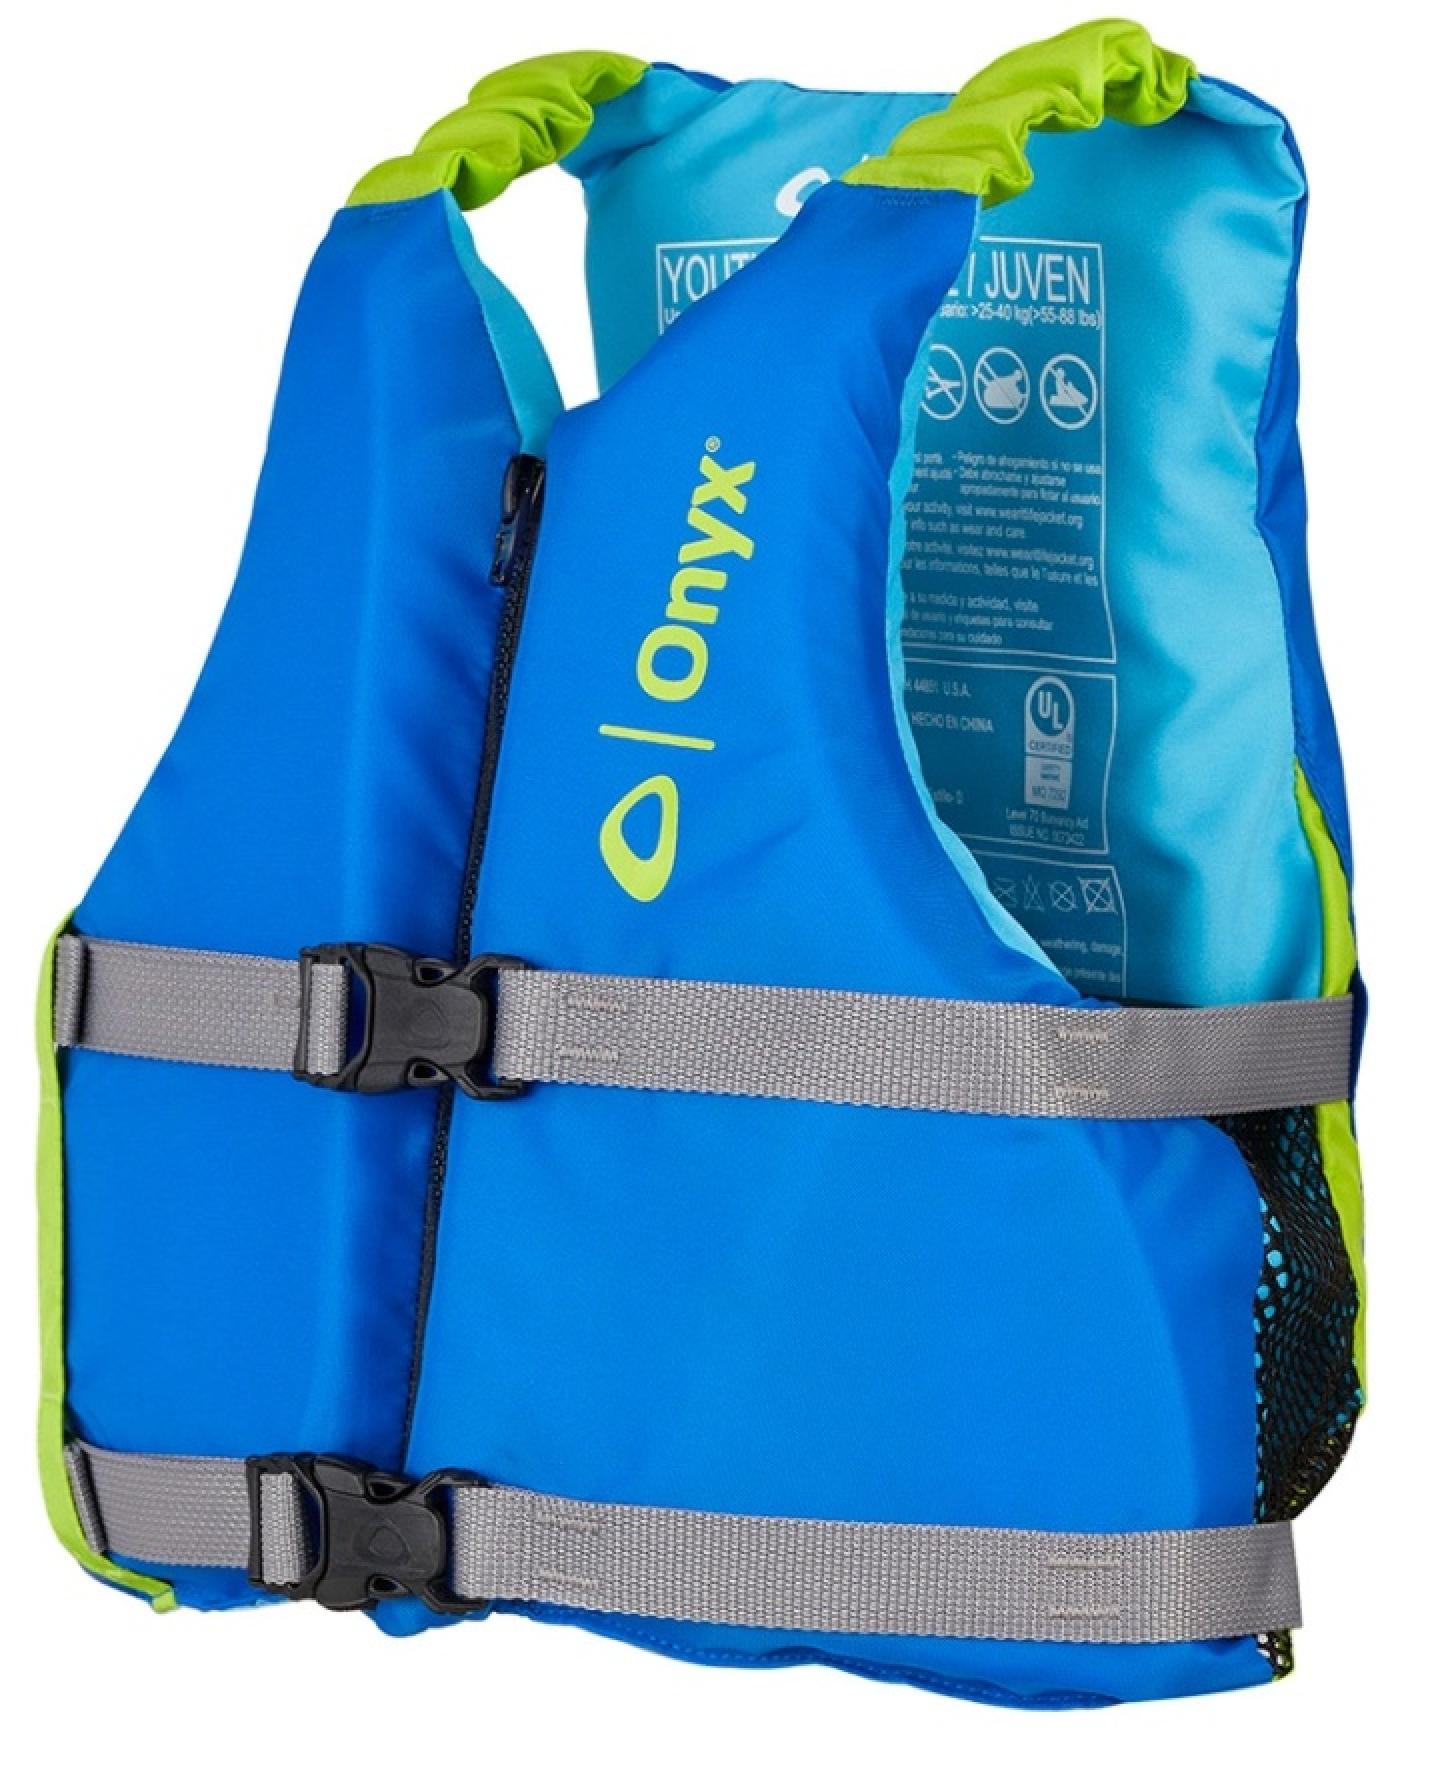 Onyx Youth Paddle Vest